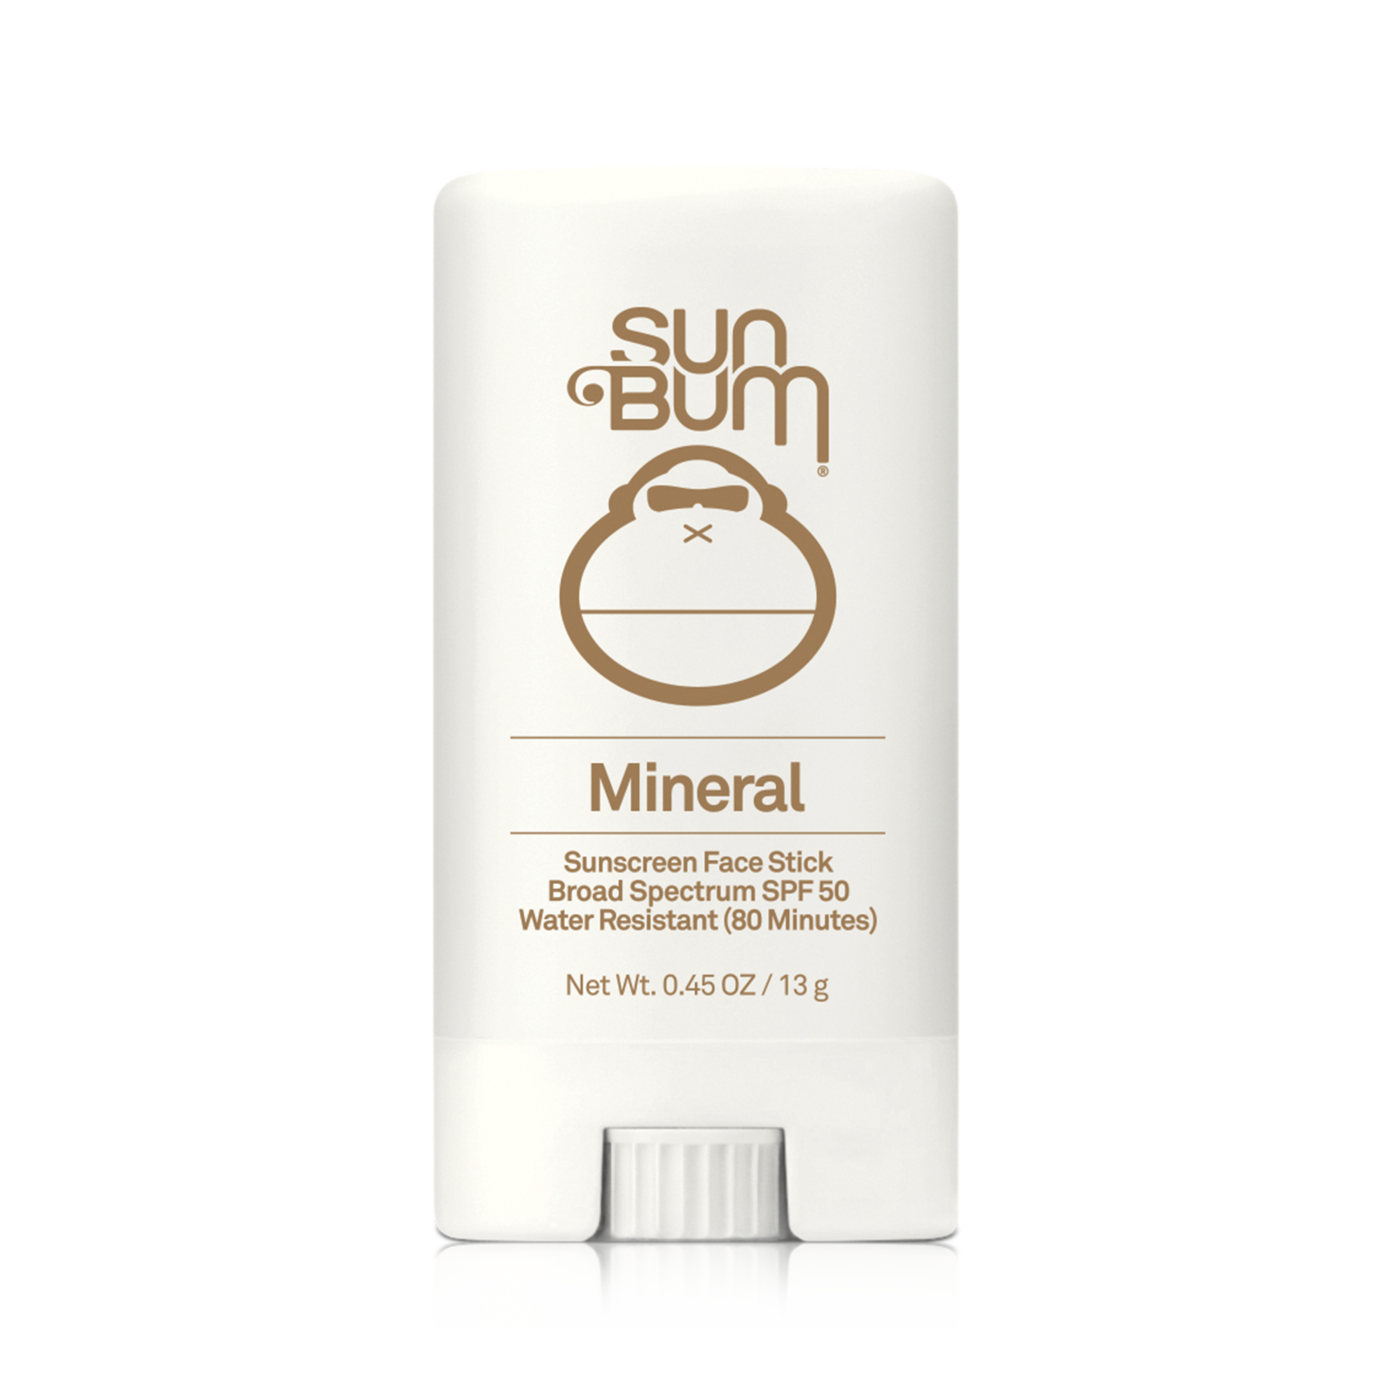 Sun Bum SPF50 Sunscreen Mineral Face Stick 0.45 oz